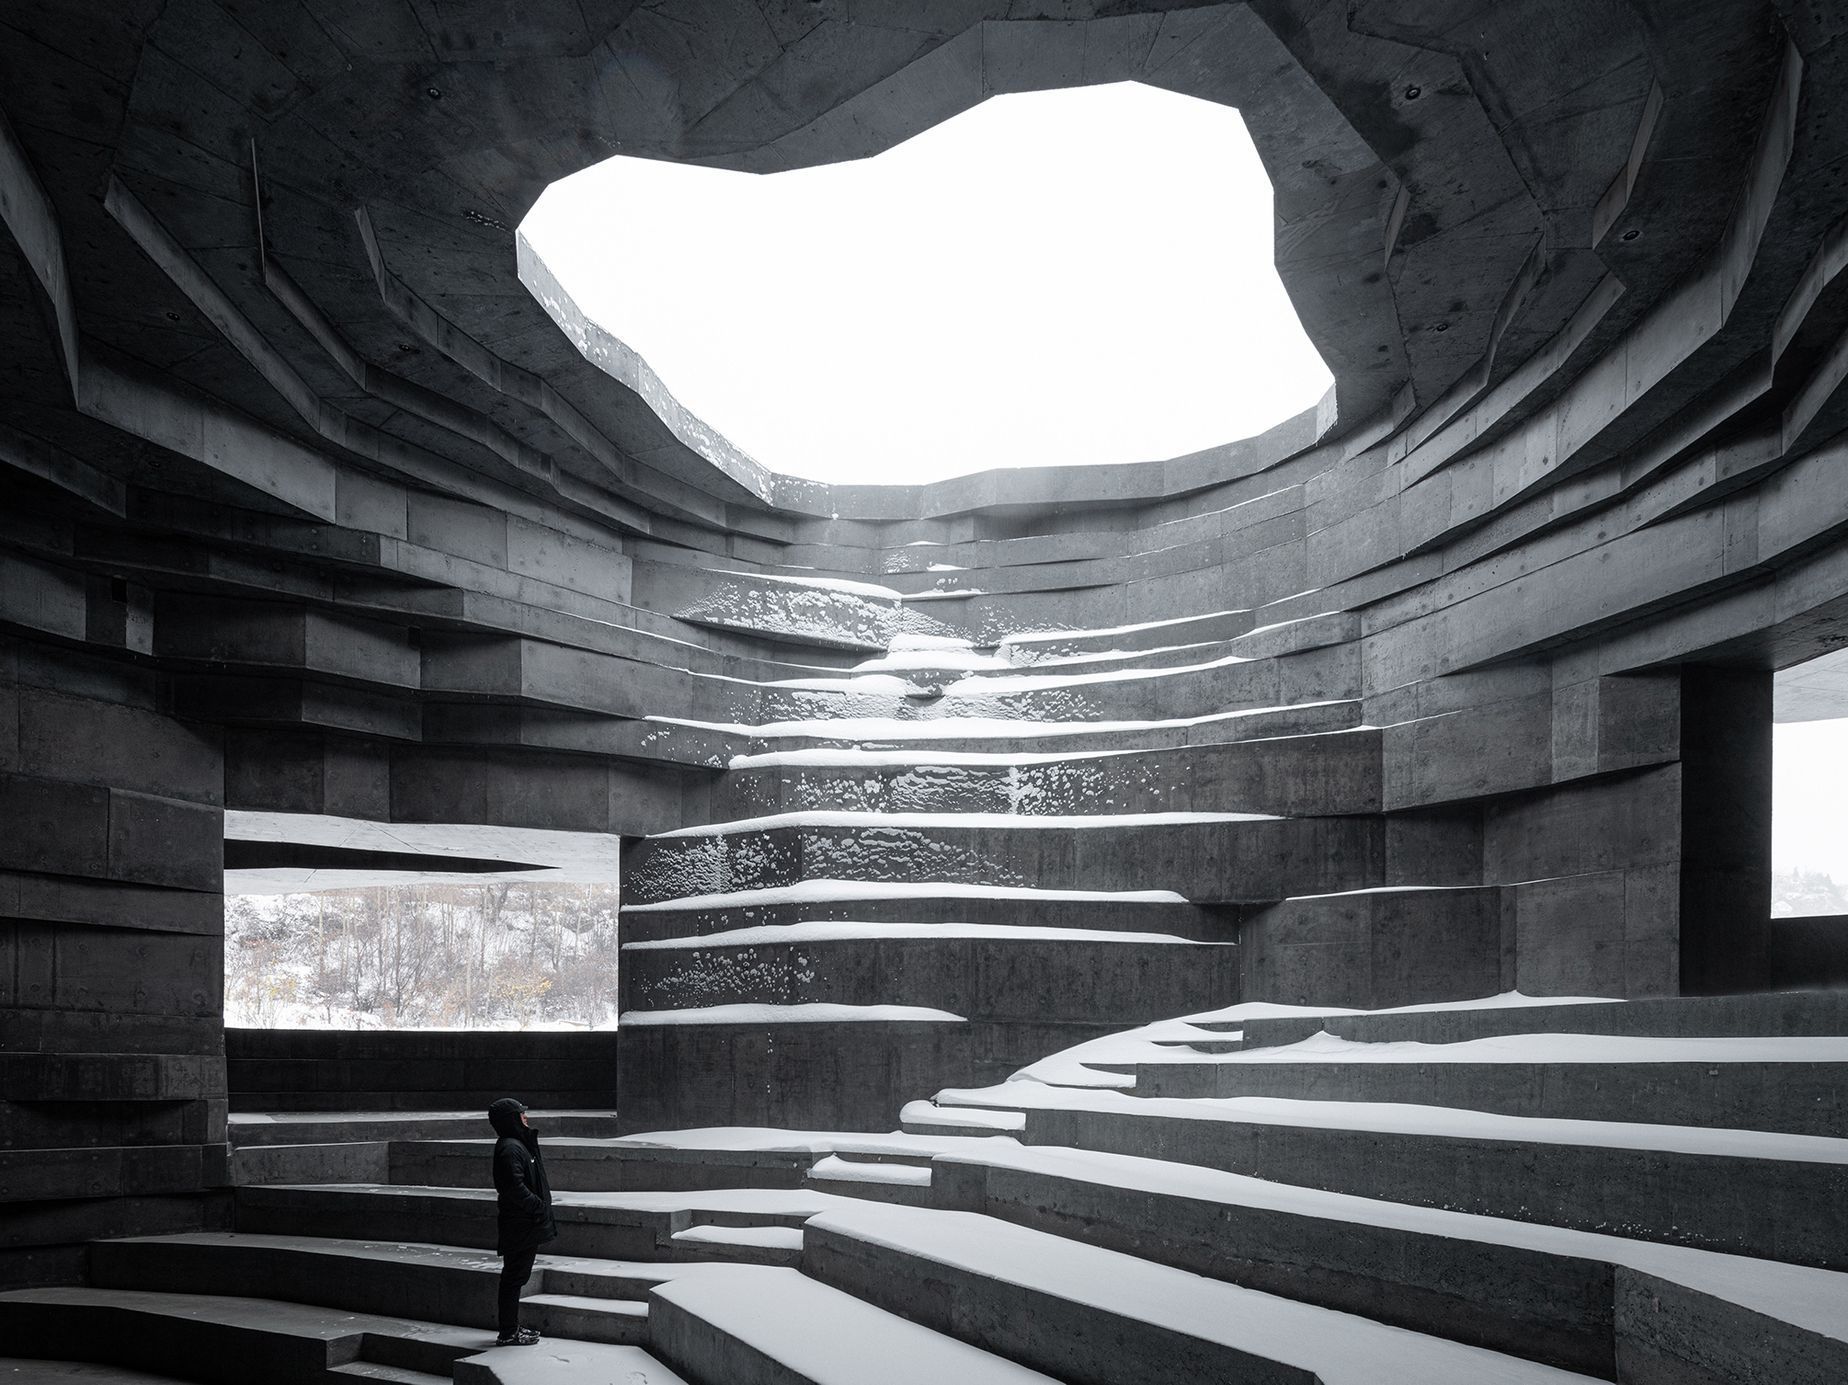 Finalisté mezinárodní fotografické soutěže The Architectural Photography Awards 2022